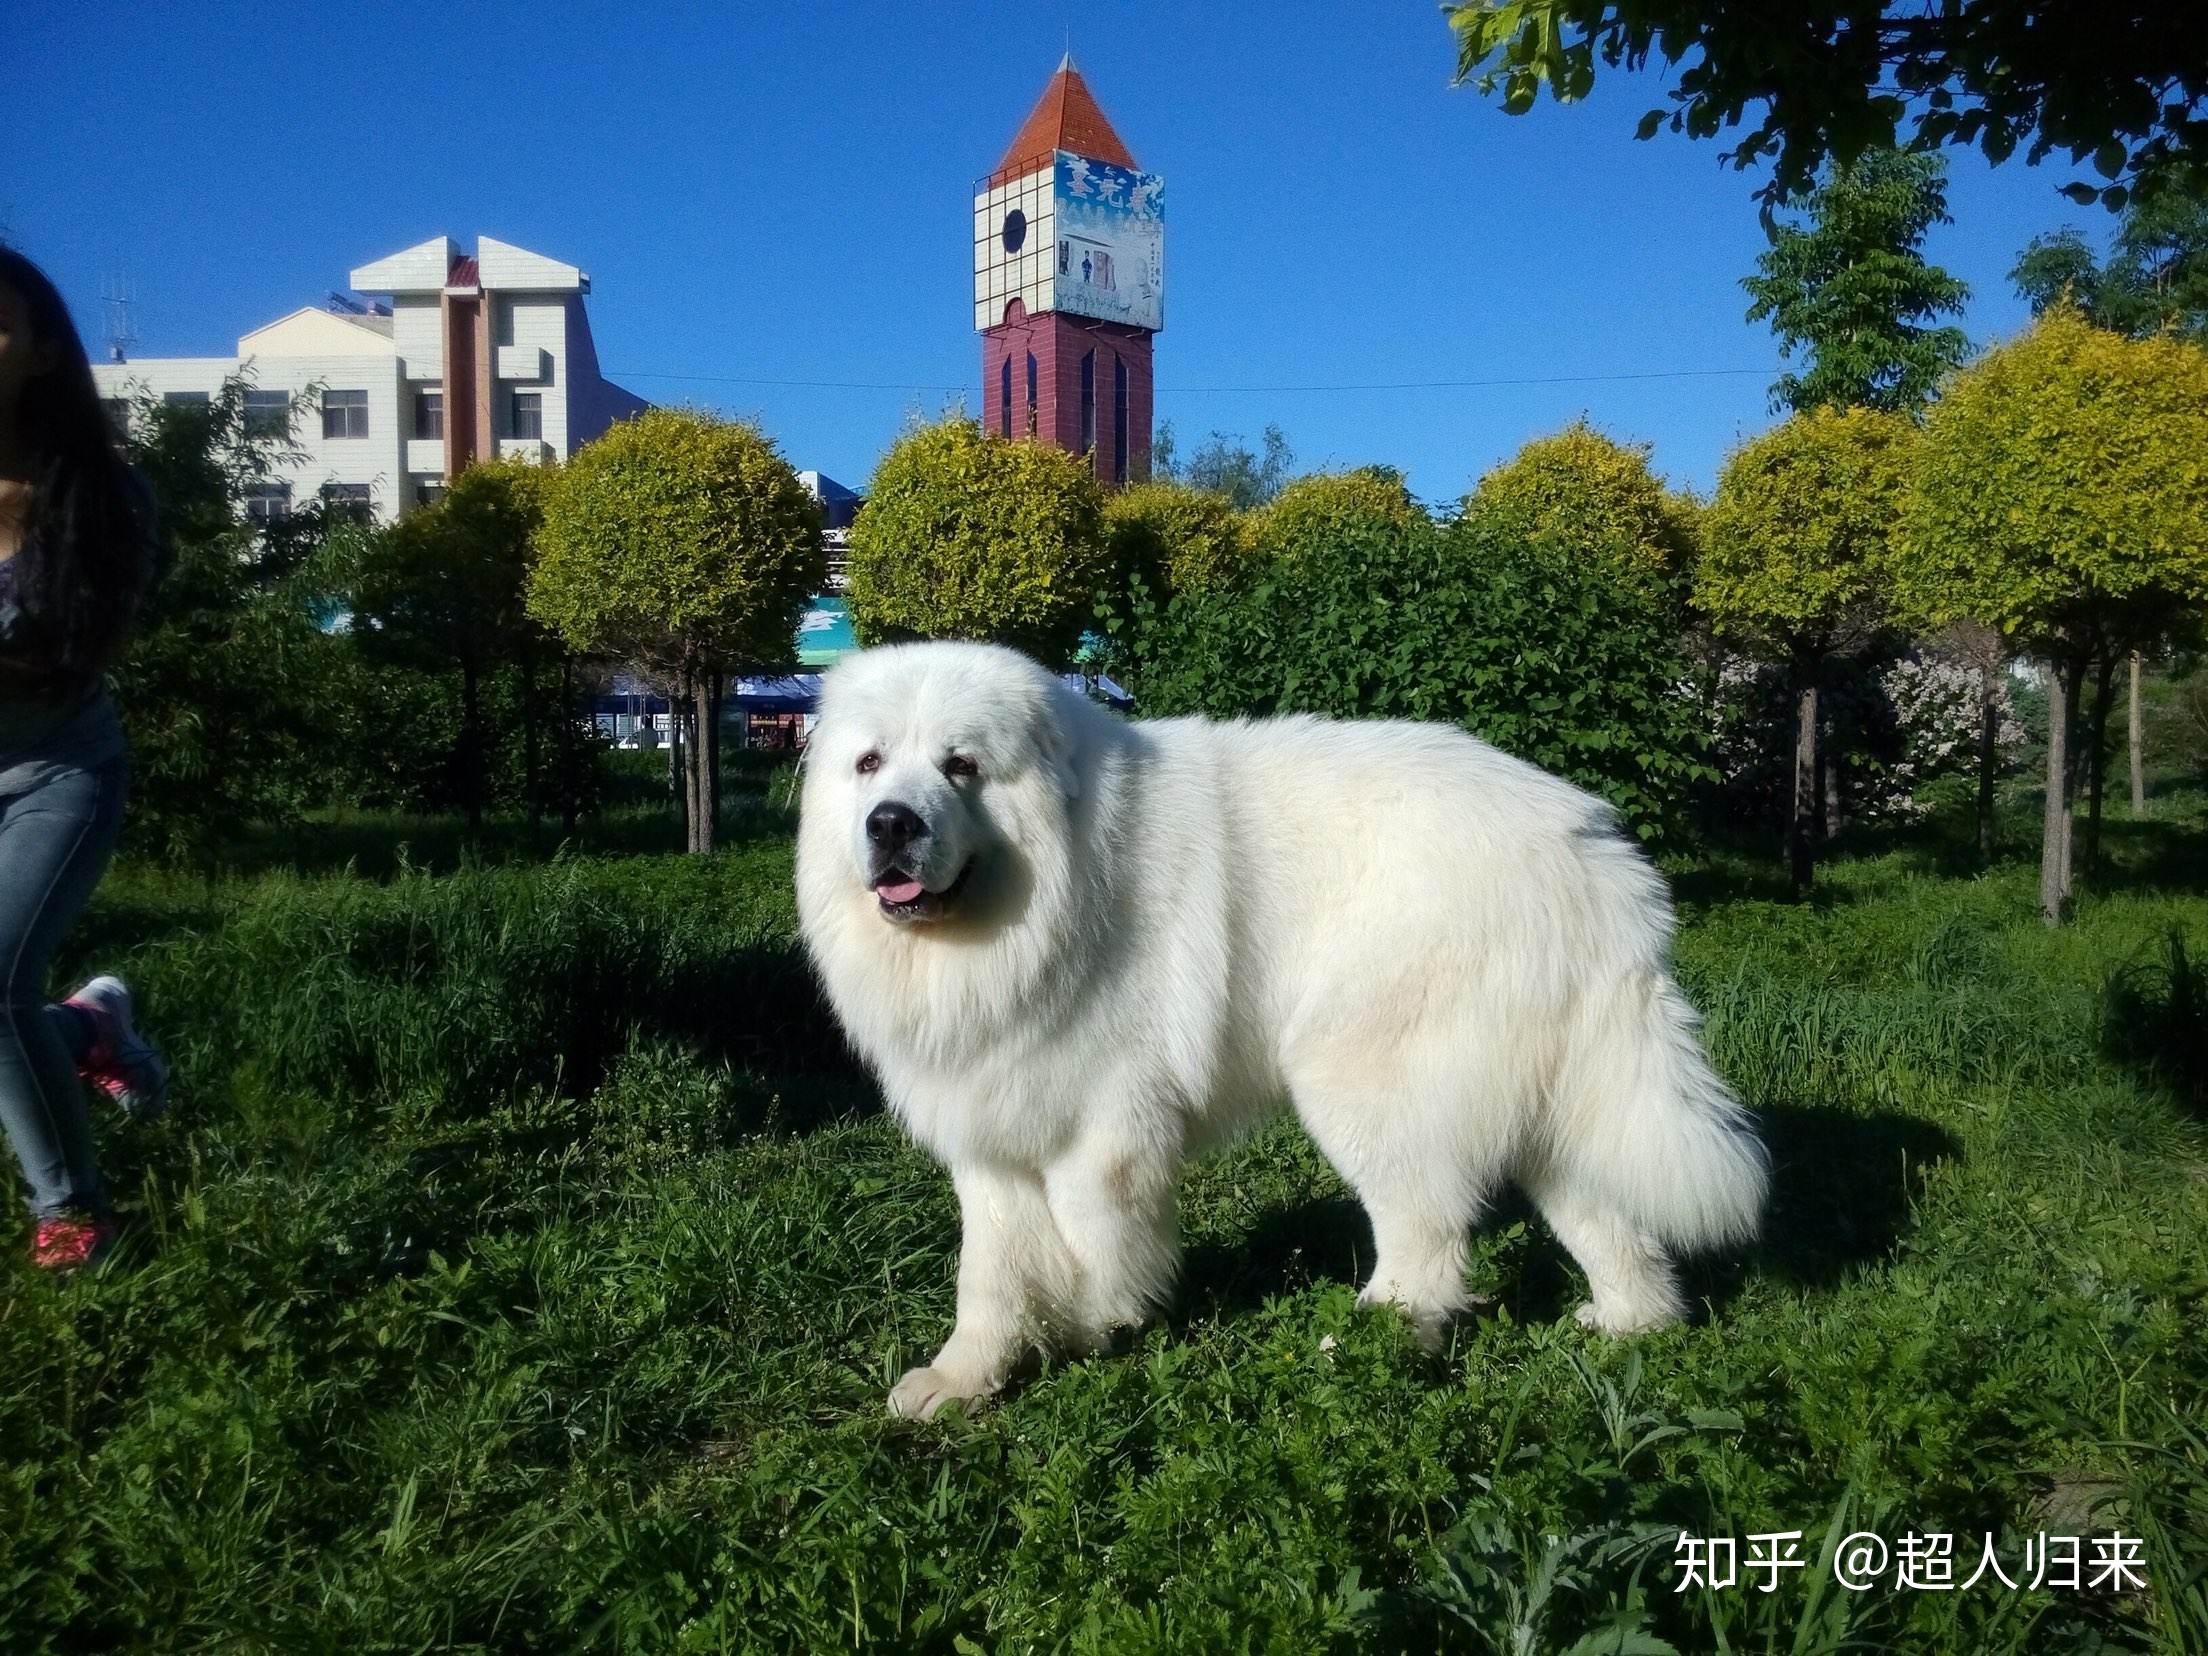 大白熊犬:别名比利牛斯山地犬,体型健壮协调,高贵优雅